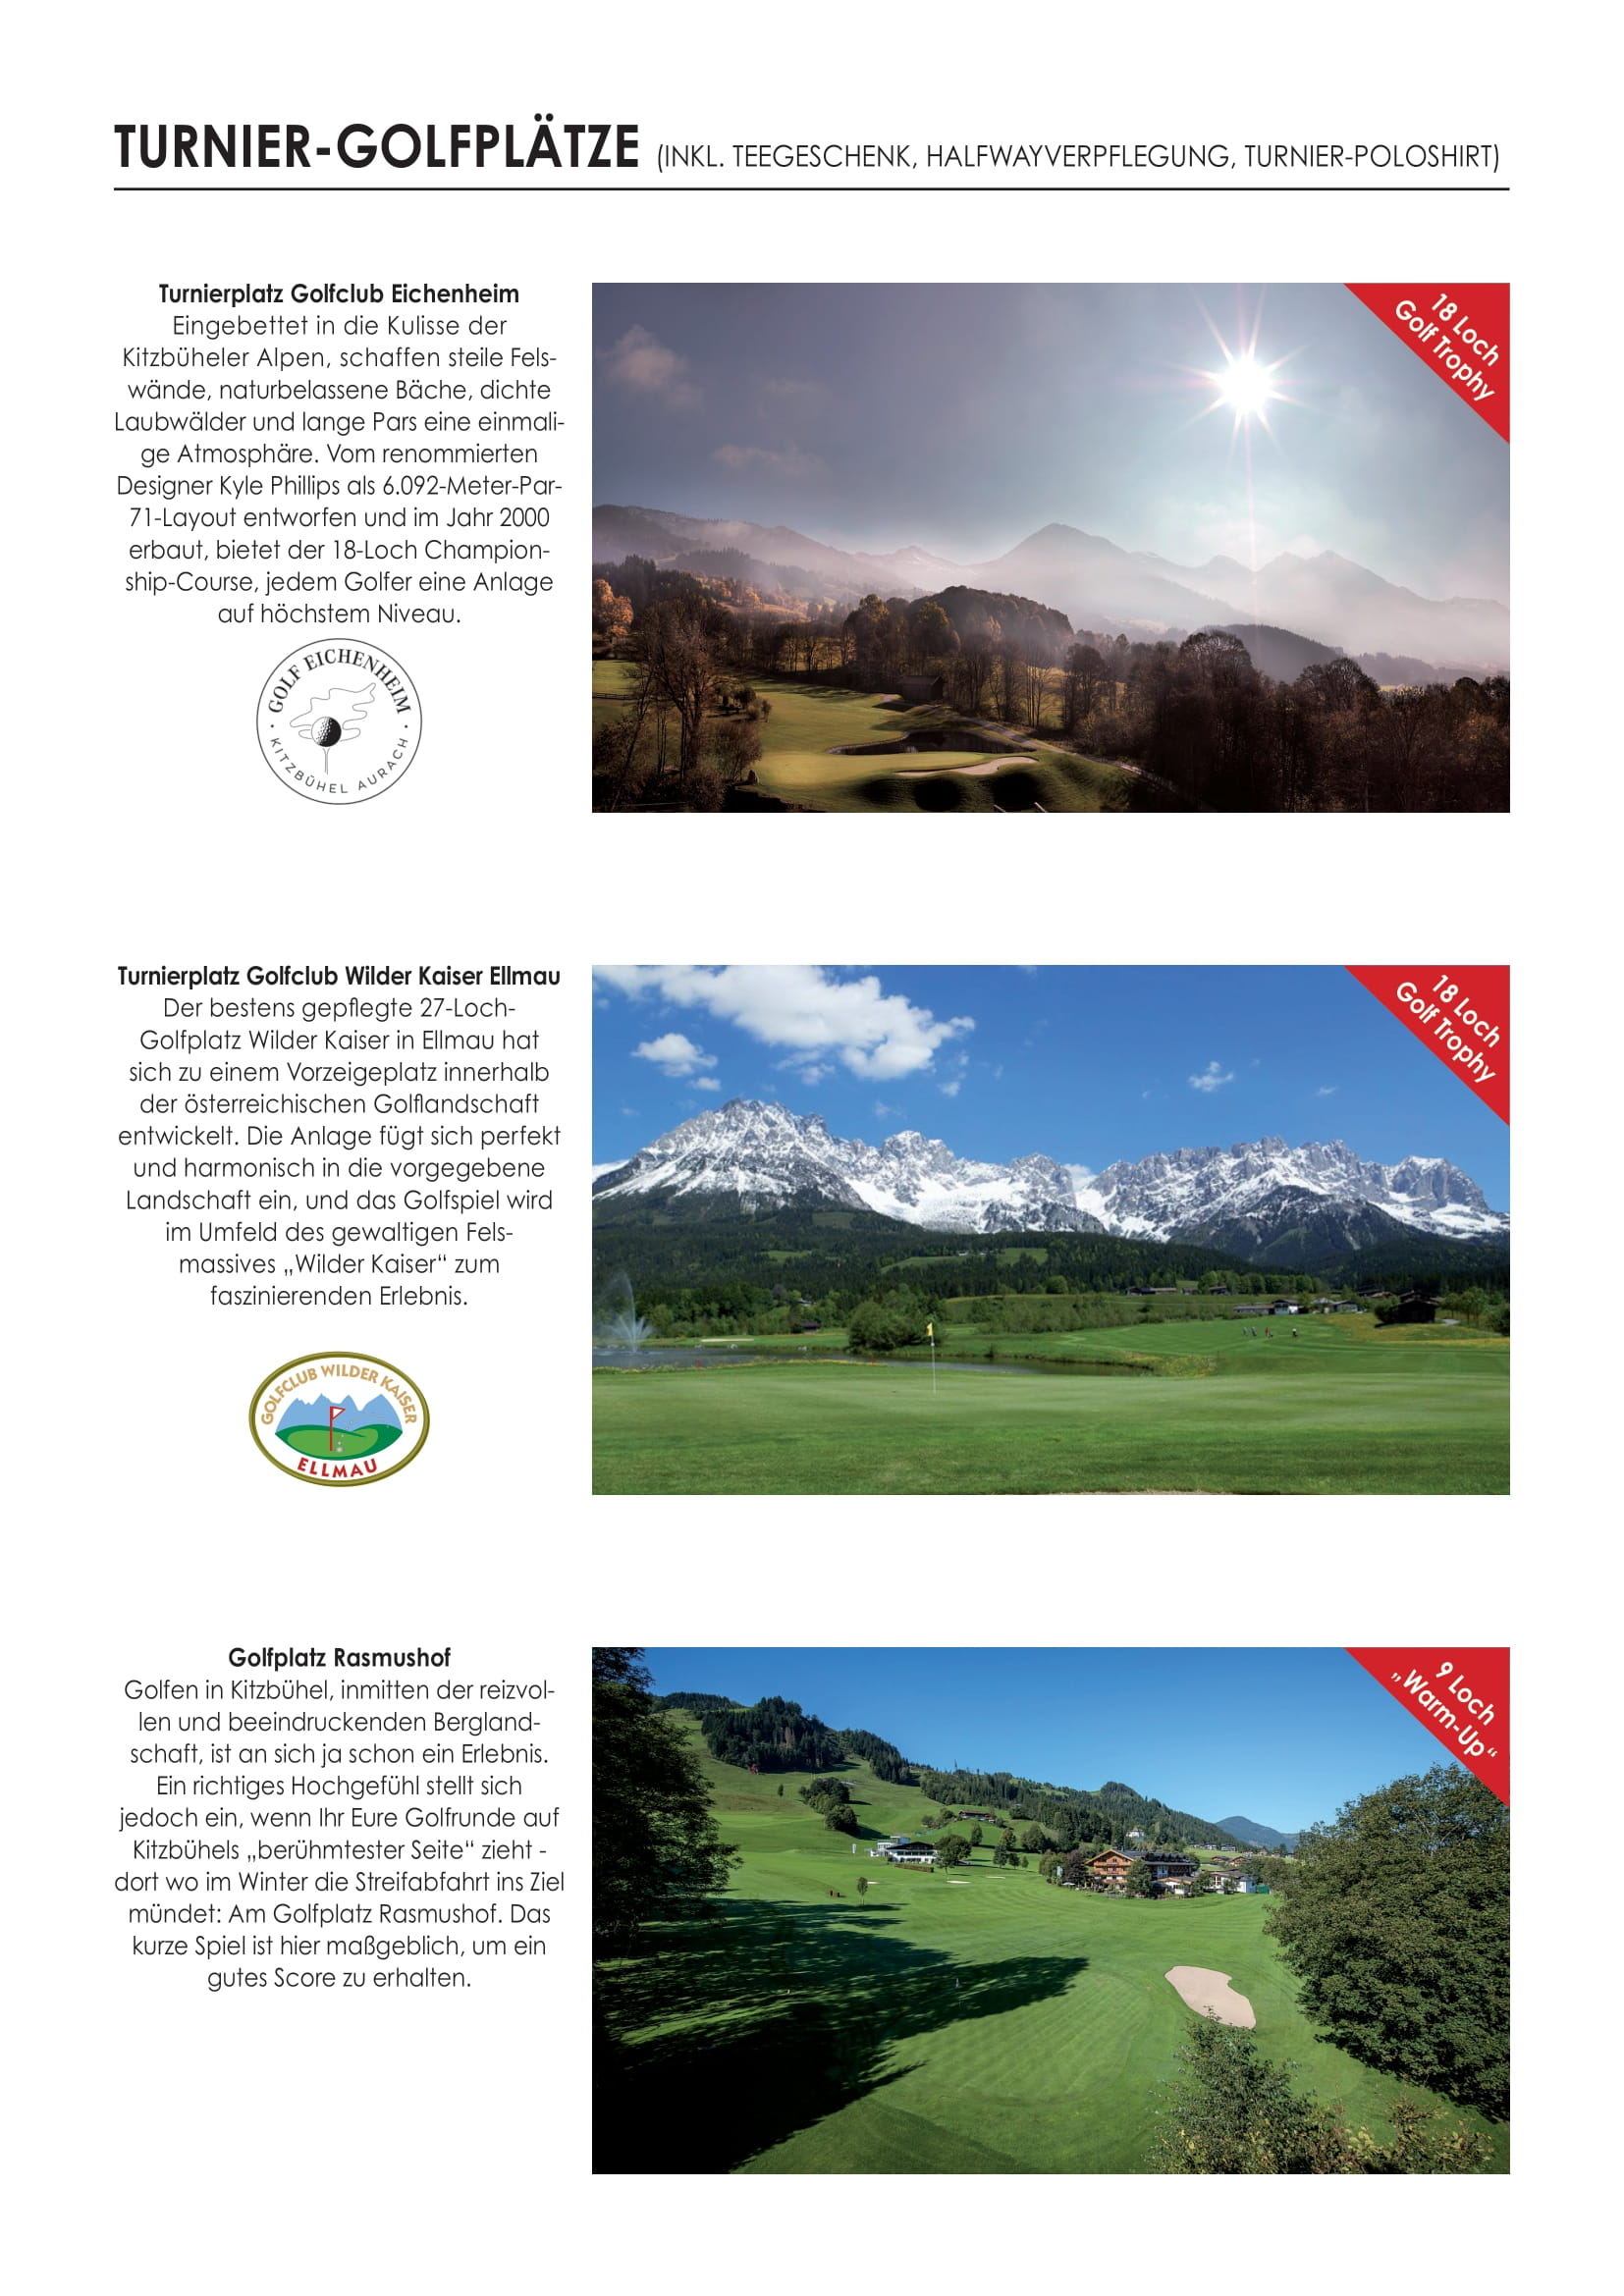 IAGPJ_Golf_Trophy_Kitzbühel_2022_Ausschreibung-2.jpg